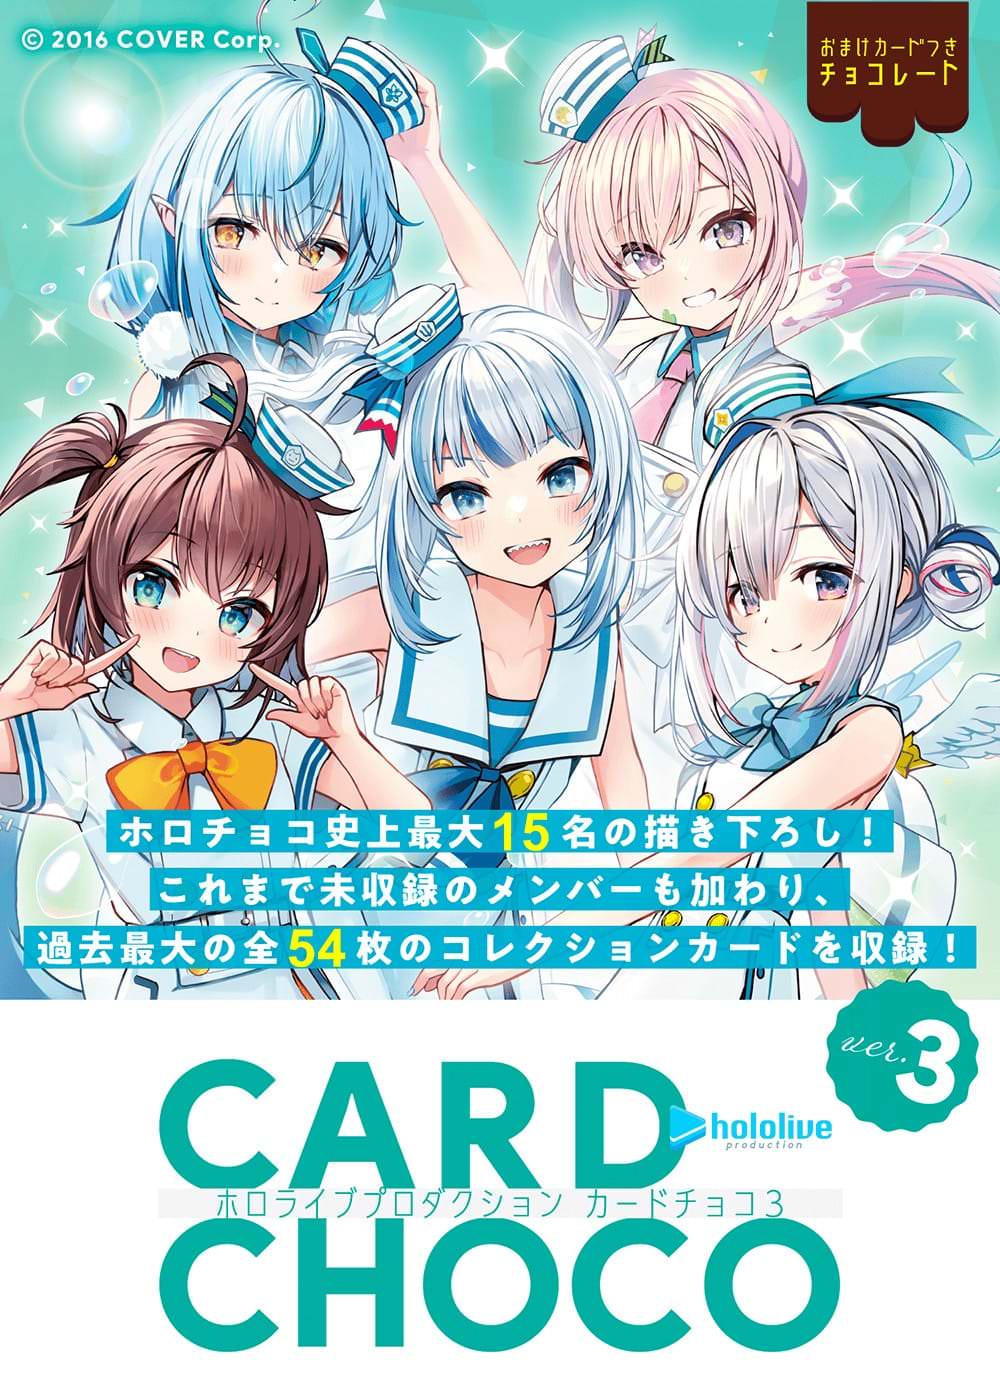 ホロライブプロダクション カードチョコ3 カード コミック/アニメグッズ おもちゃ・ホビー・グッズ 無料発送